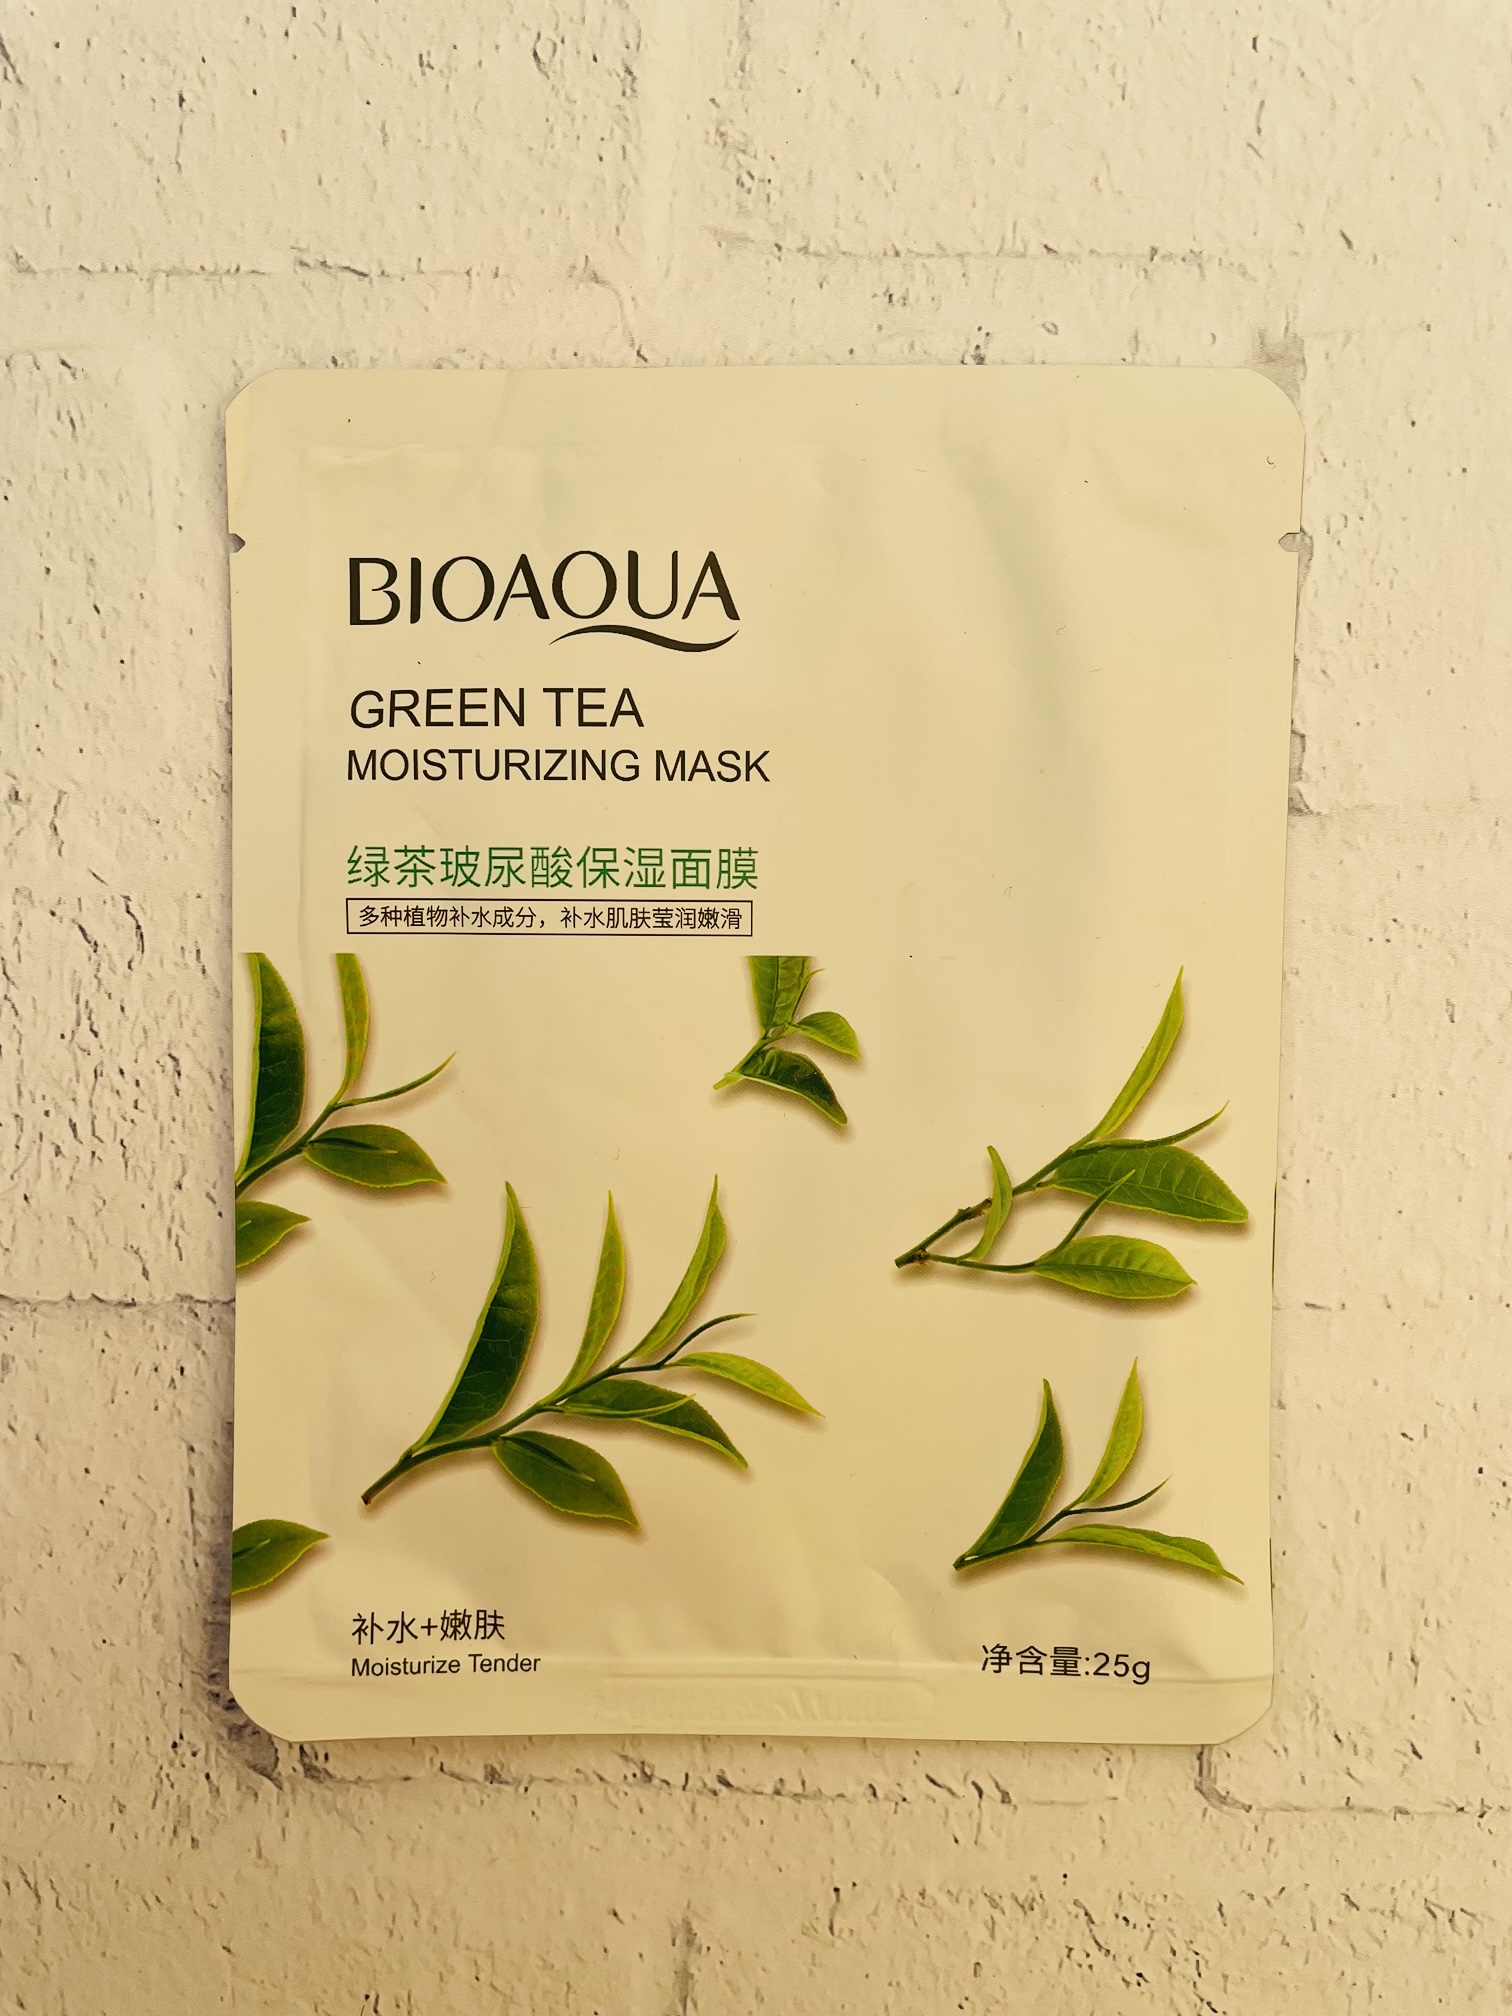 ماسک ورقه ای چای سبز کنترل کننده چربی پوستBIOAQUA